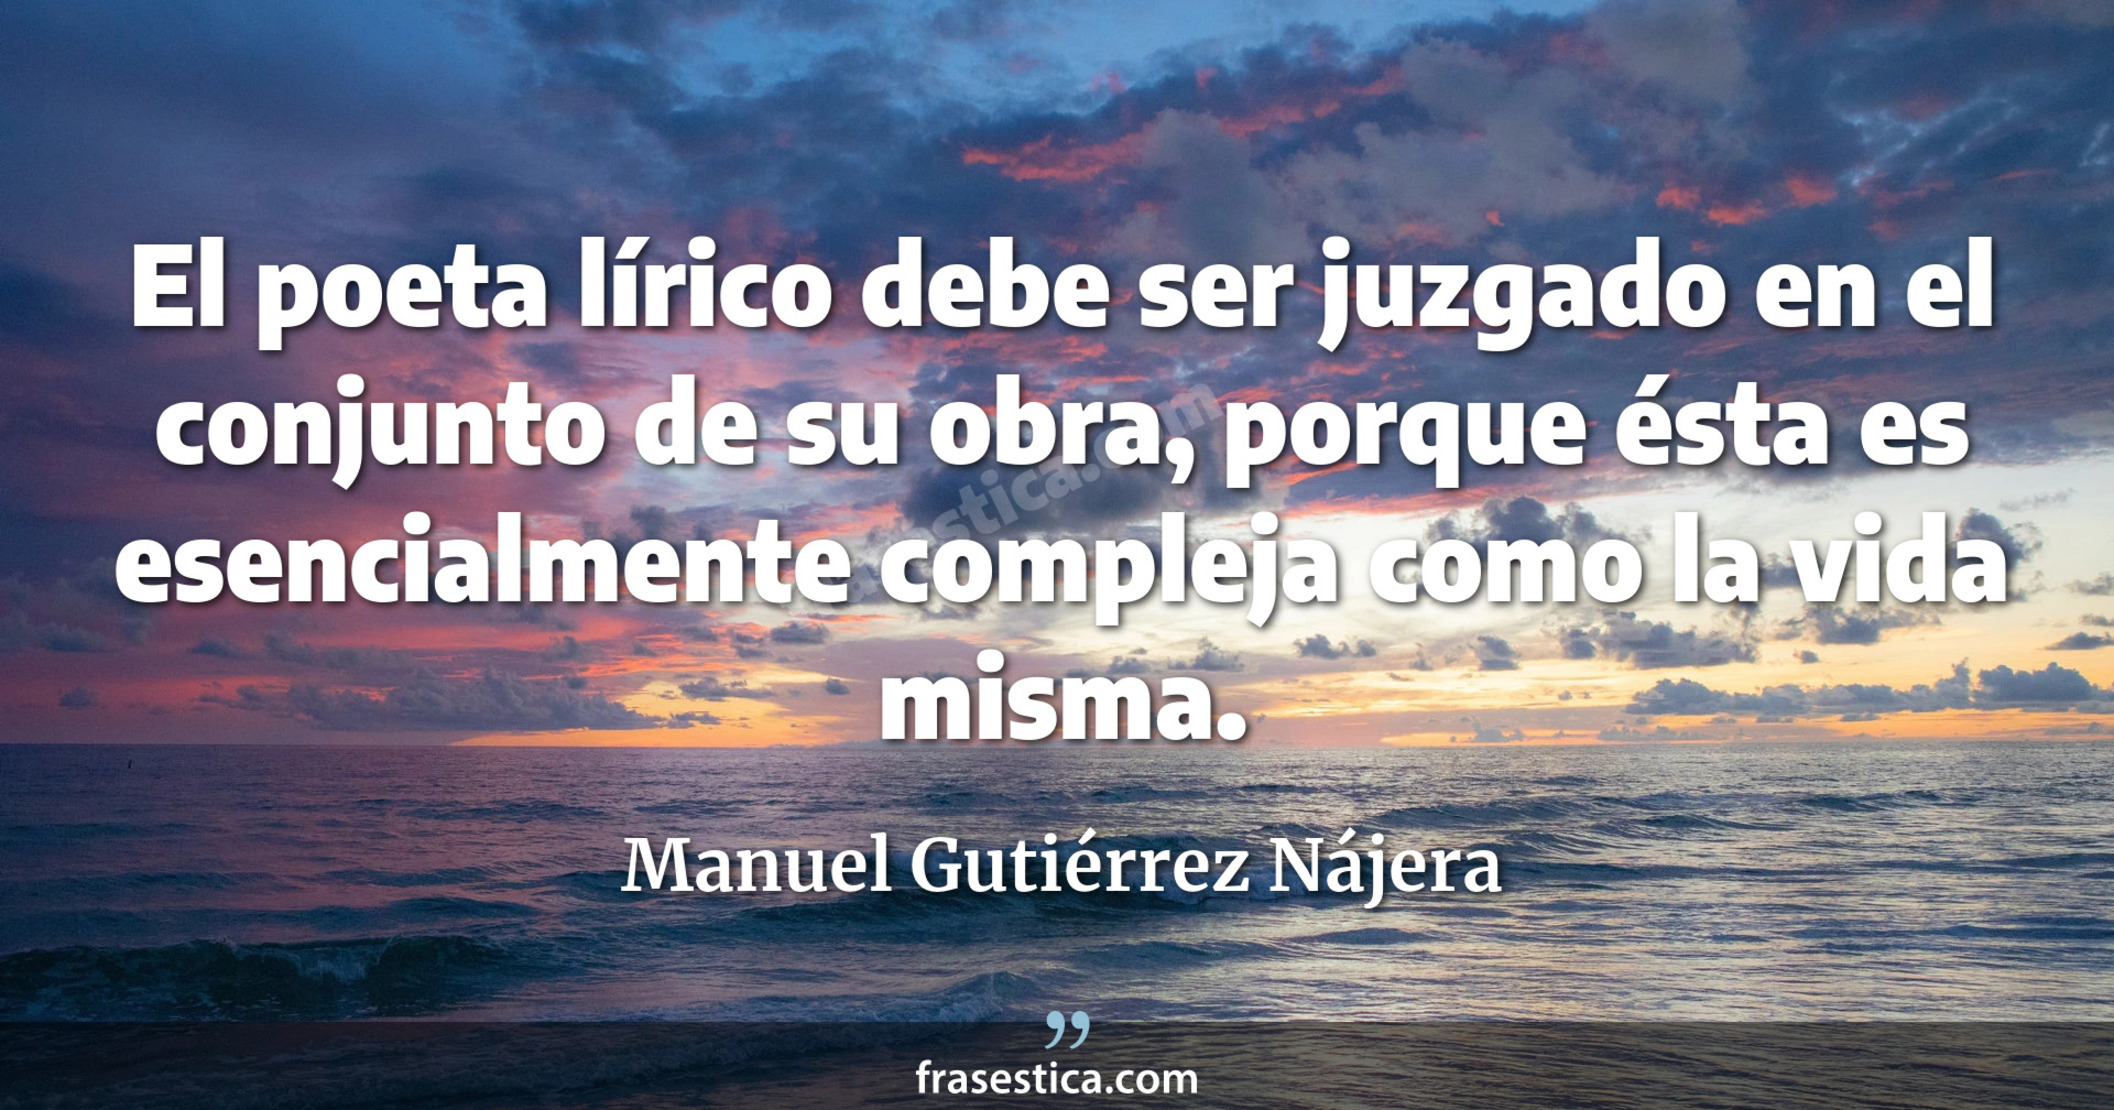 El poeta lírico debe ser juzgado en el conjunto de su obra, porque ésta es esencialmente compleja como la vida misma. - Manuel Gutiérrez Nájera